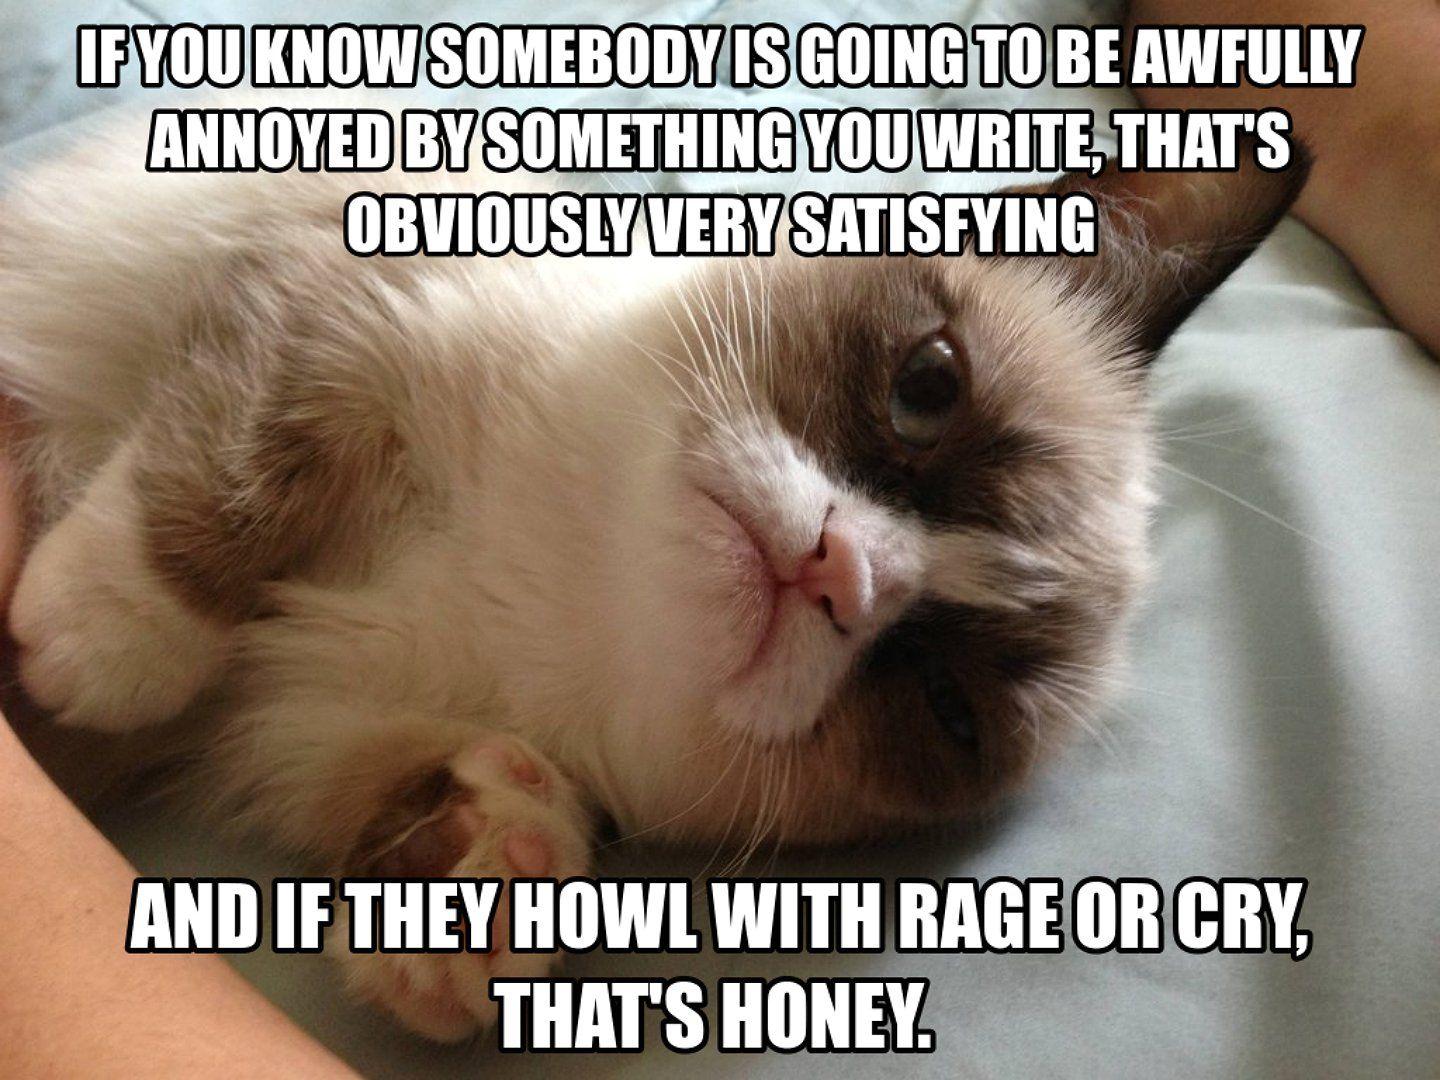 1440x1080 Cat meme quote hình nền vui nhộn hài hước grumpy (4).  1440x1080.  355093. Hình nềnUP